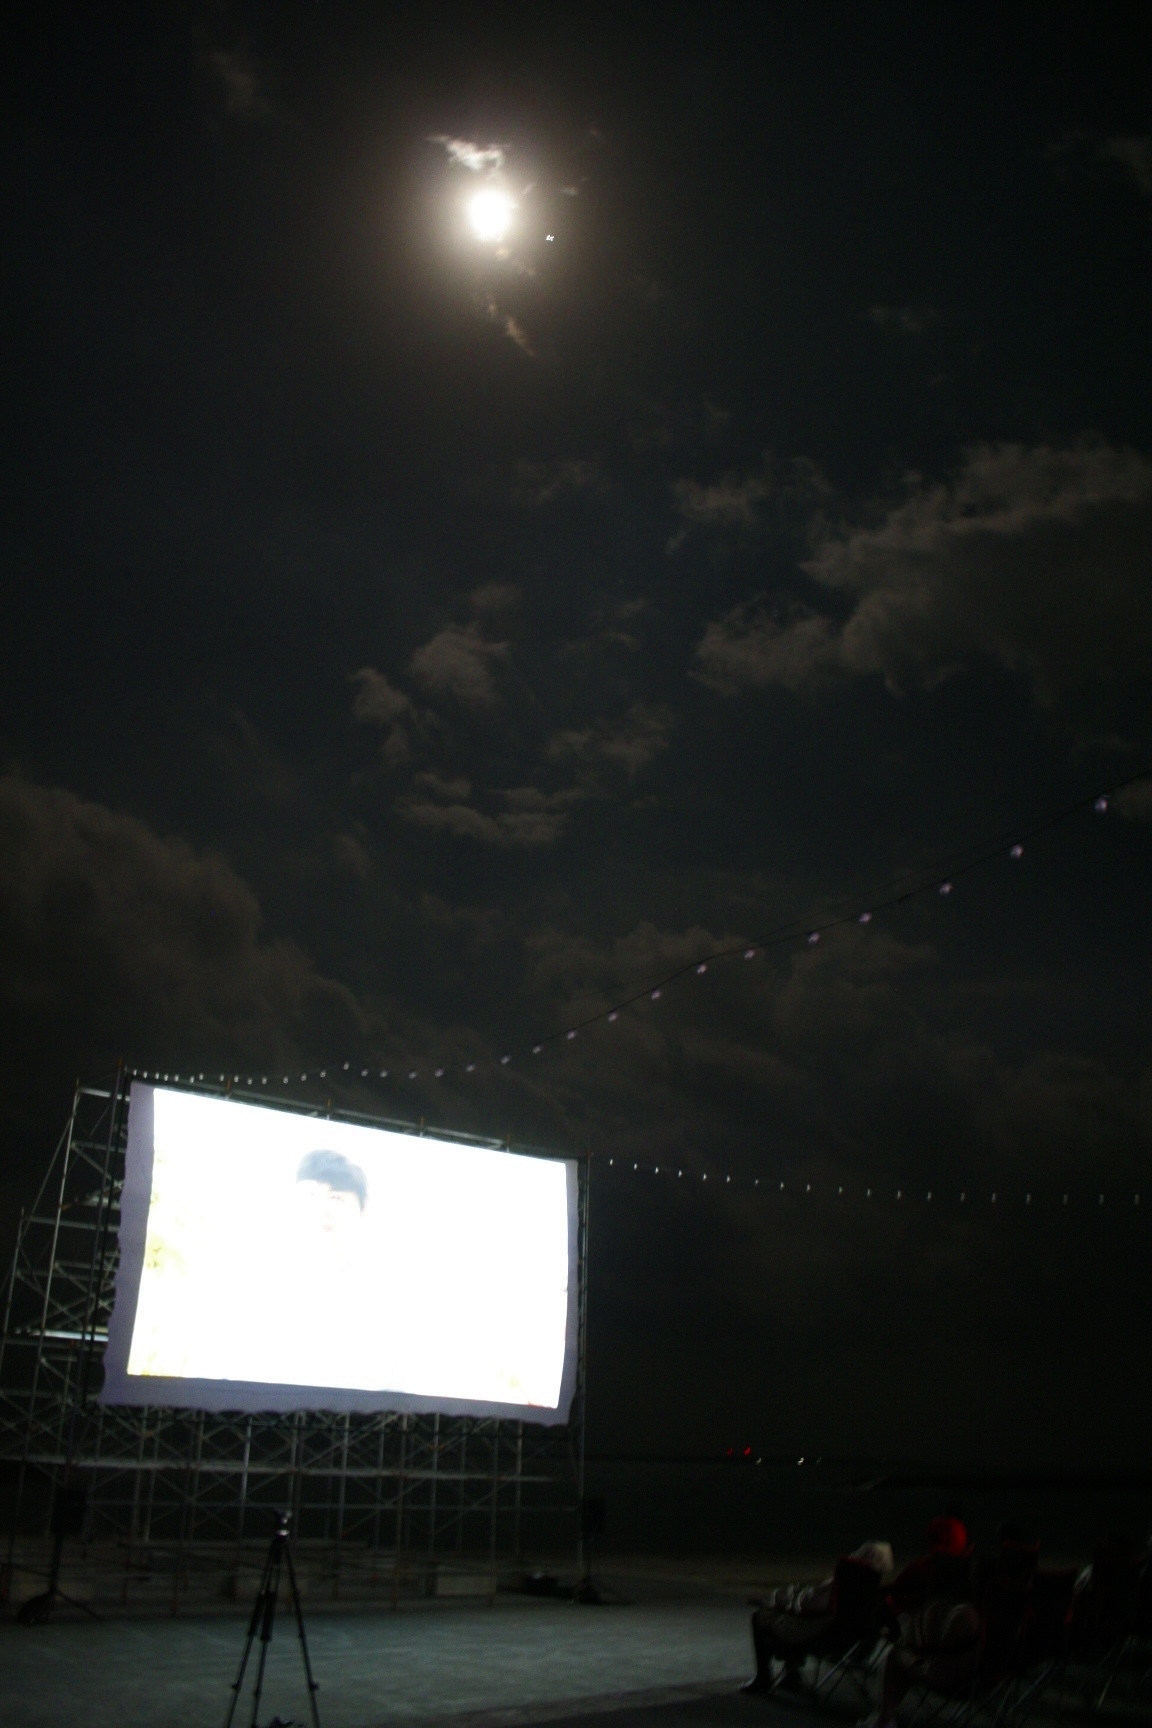 月明りと星影、BGMは波の音…夜のビーチ上映で非日常体験を楽しむ 「Cinema at Sea 沖縄環太平洋国際フィルムフェスティバル」